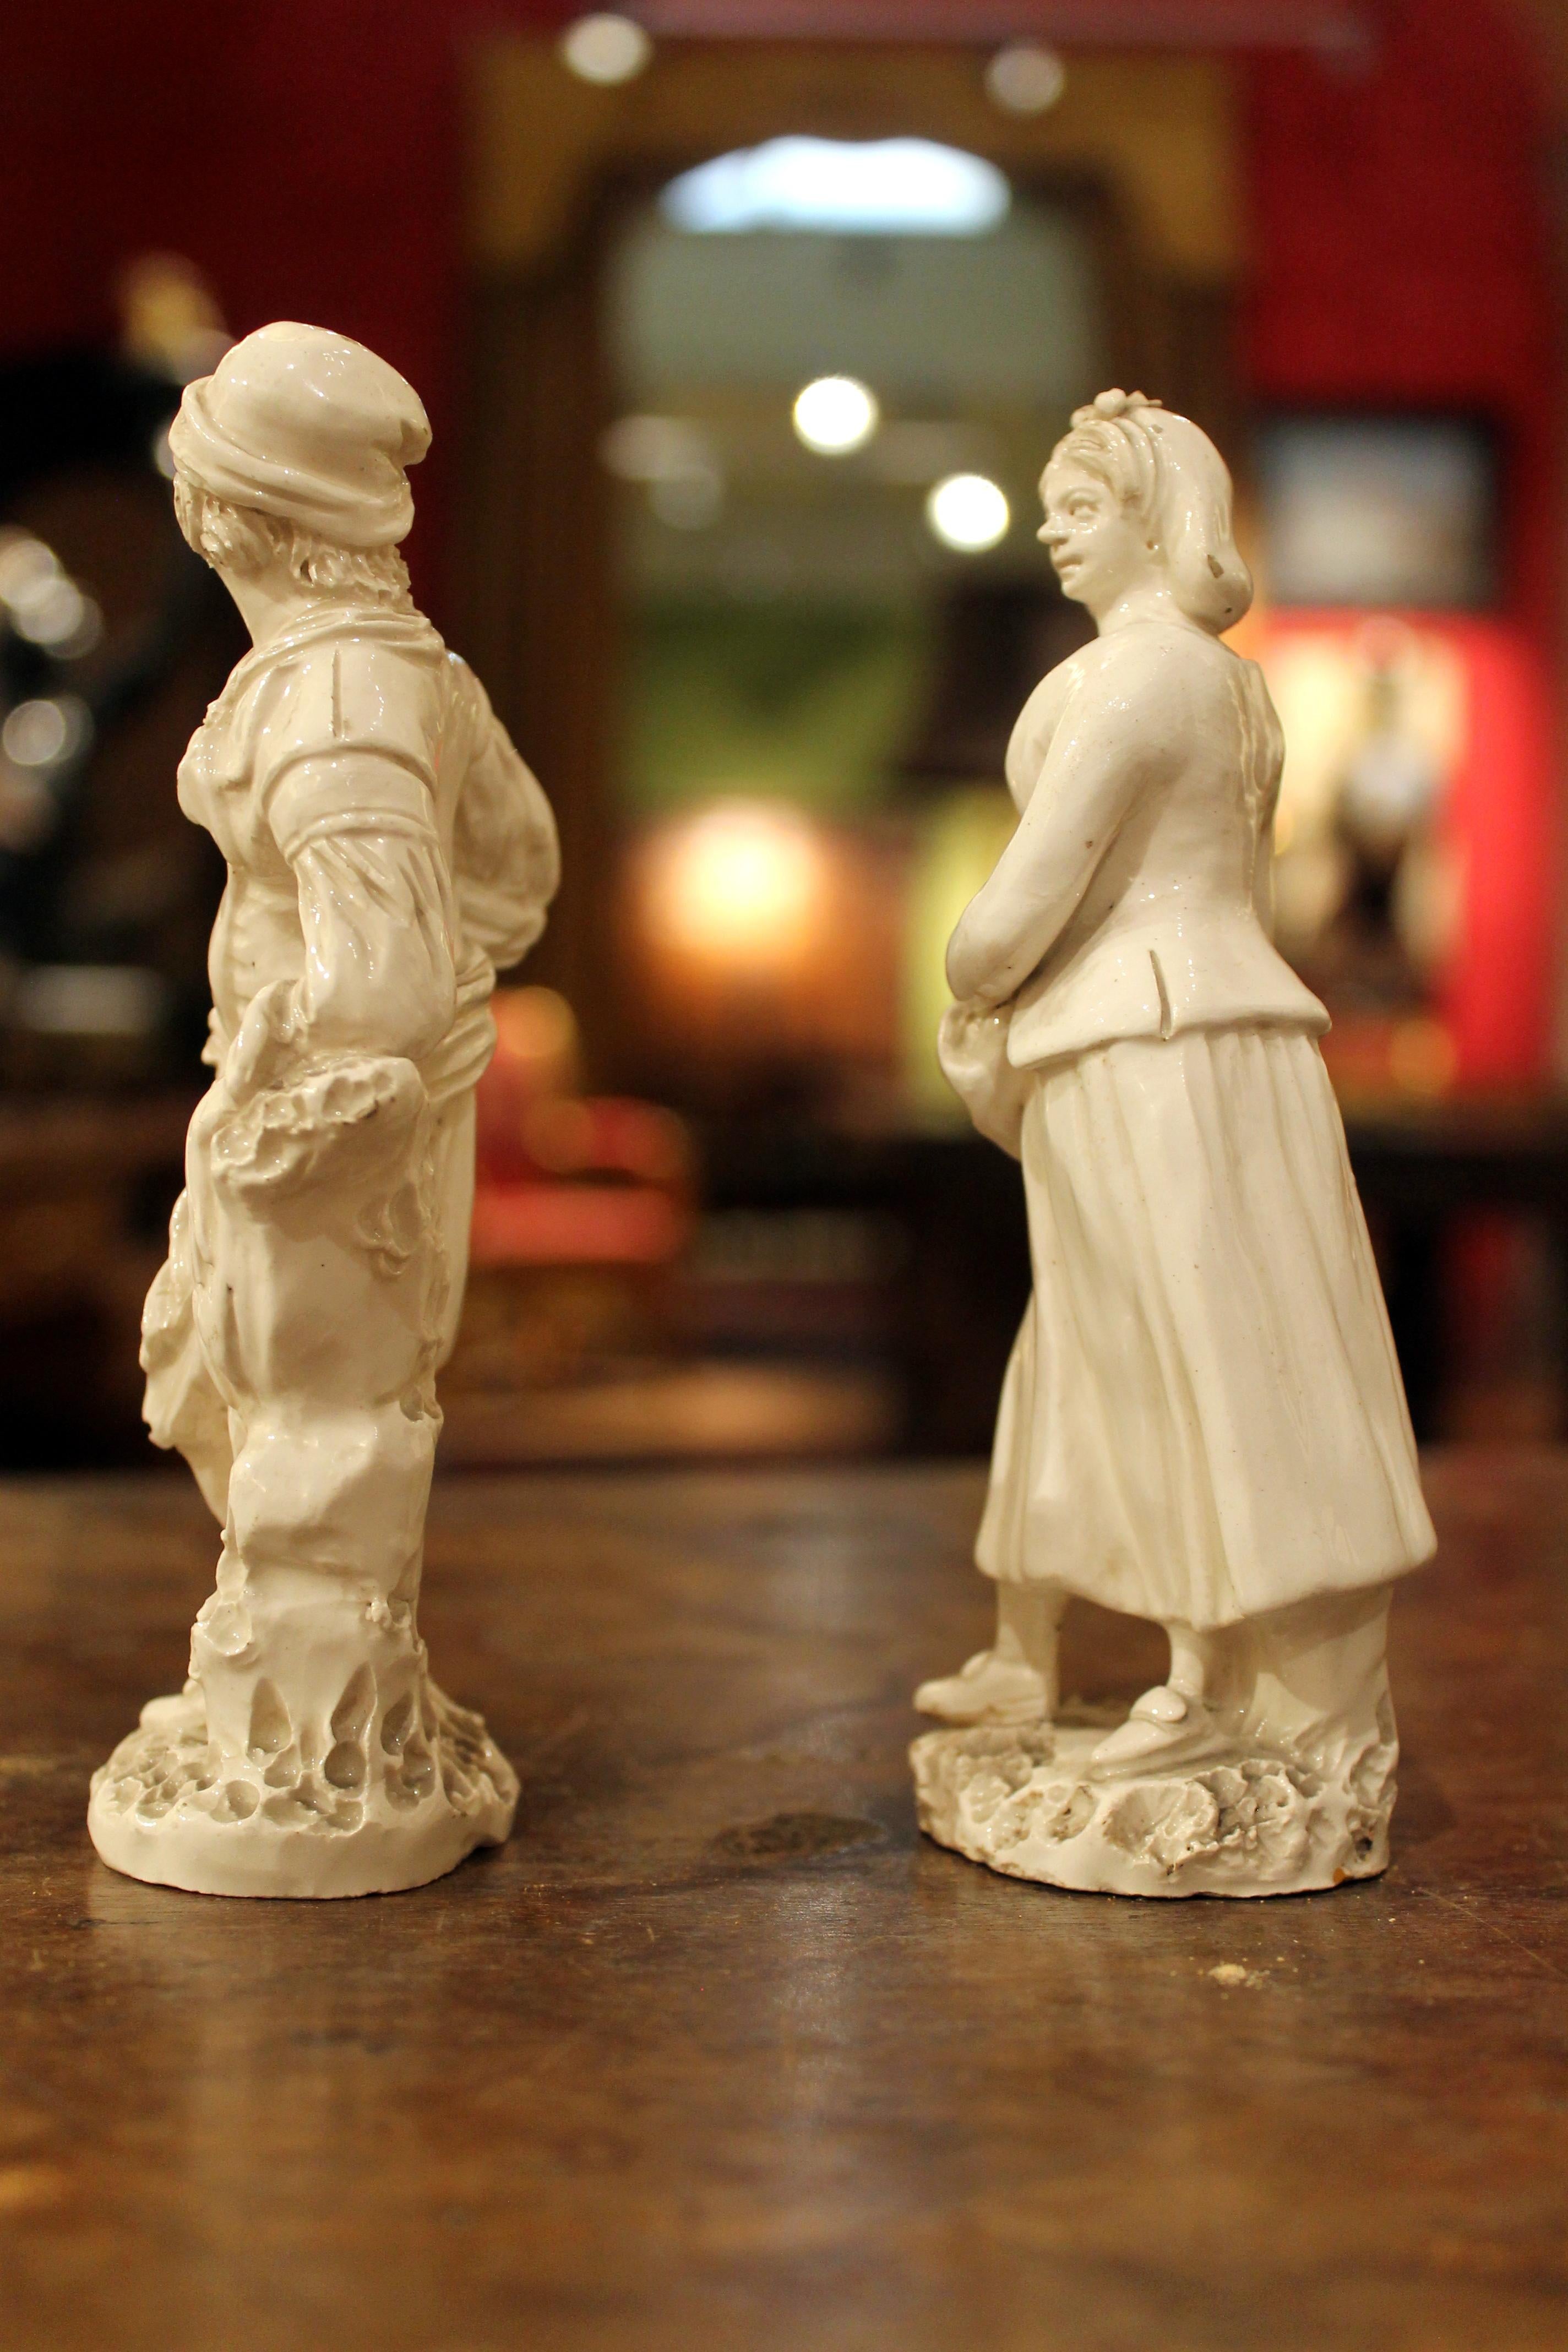 Paire de figurines en porcelaine blanche de Naples, véritable Fabbrica Ferdinandea, de la fin du XVIIIe siècle, représentant une dame et un homme, modelées à la main en ronde-bosse. Ce joli couple de statuettes en blanc représente un vendeur de